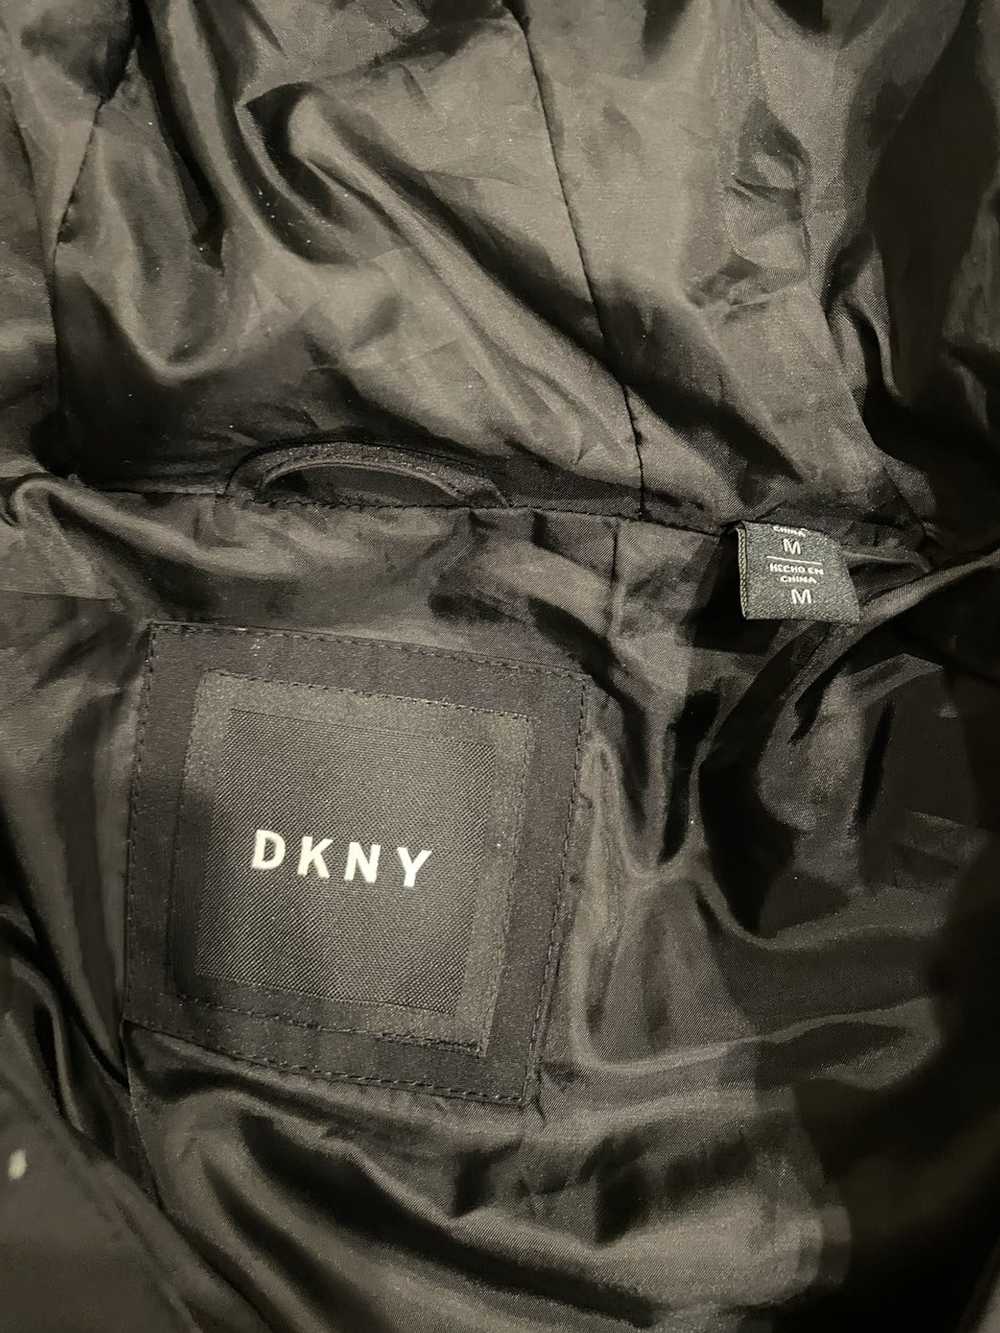 DKNY DKNY Winter Parka - image 3